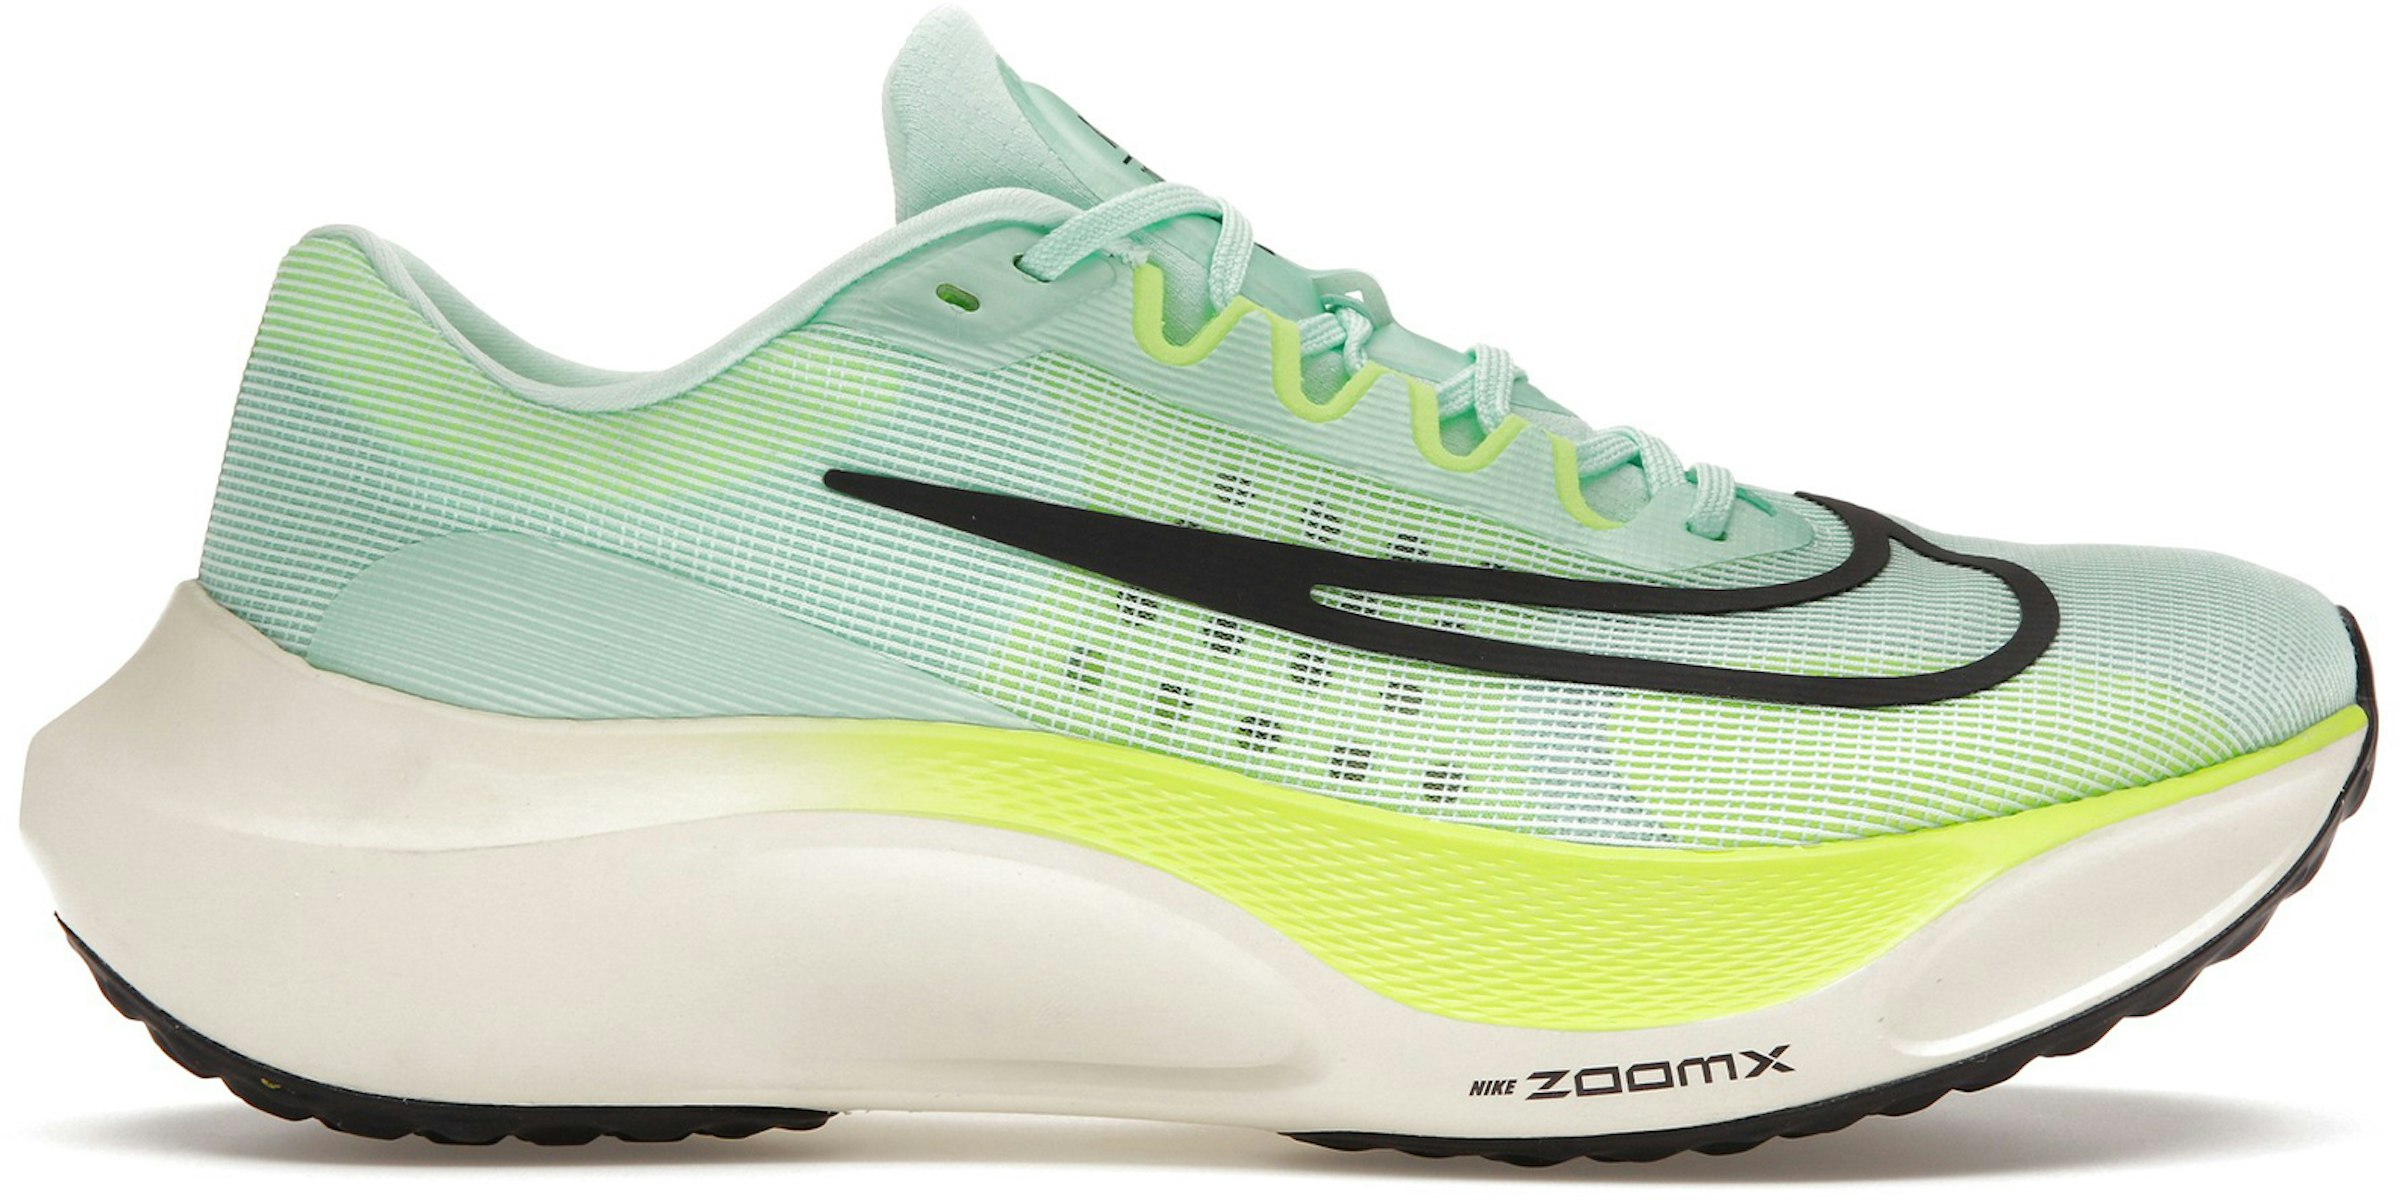 Nike Zoom 5 Mint Foam Ghost Green Men's - DM8968-300 - US